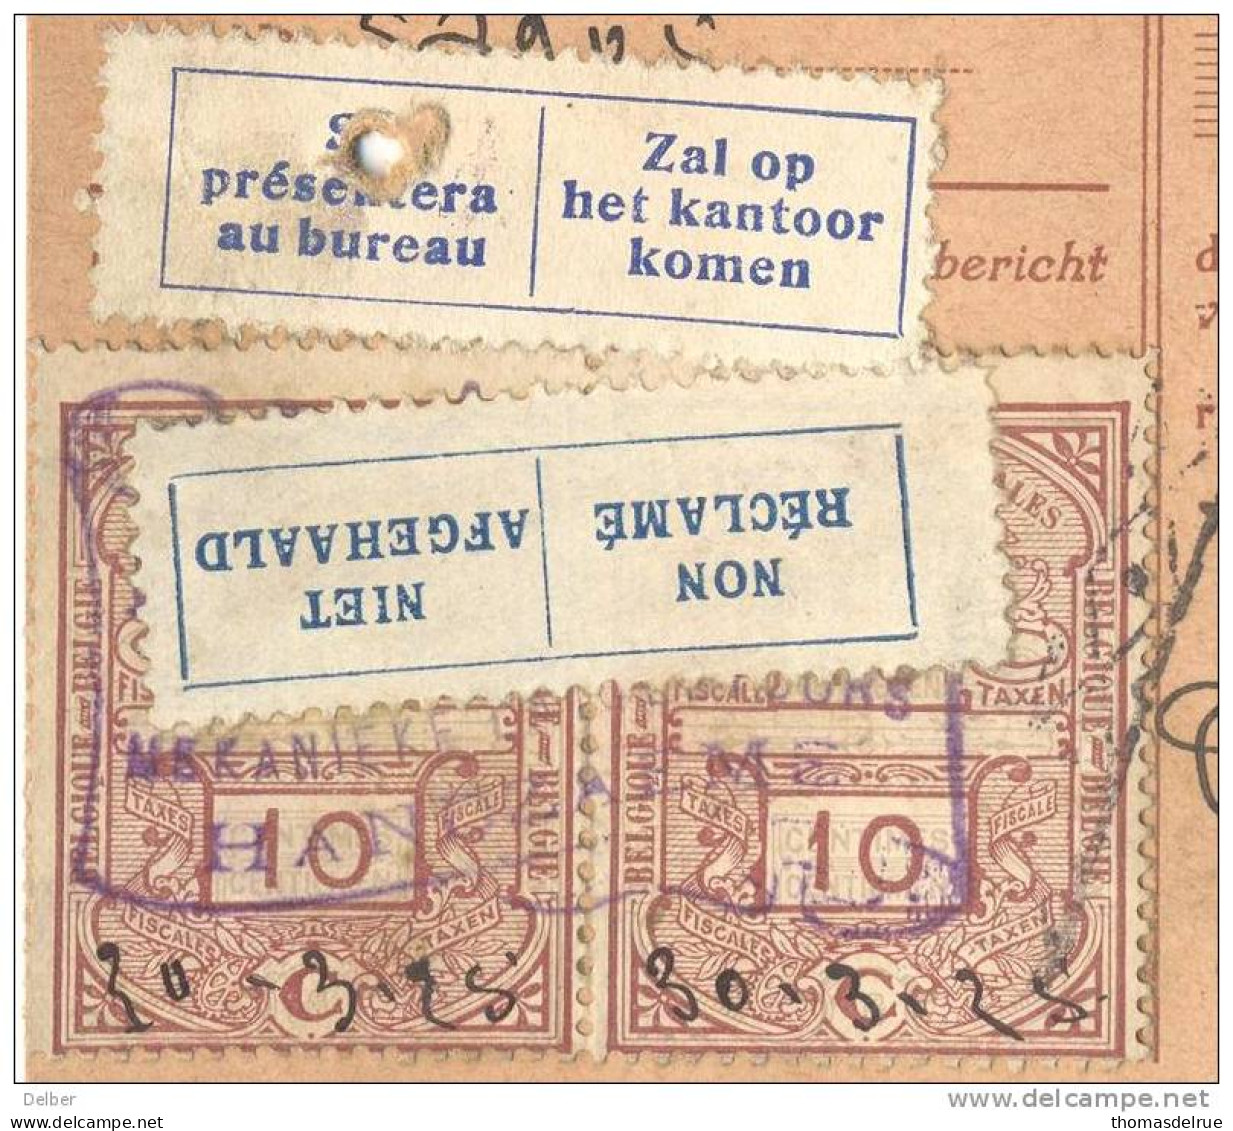 _Nk616: N°211 : HANDZAEME Op Ontvangkaart:+10ct&10ct Fiskale Zegels+etiketjes: NIET AFGEHAALD..&Zal Op Het Kantoor.. - 1921-1925 Small Montenez